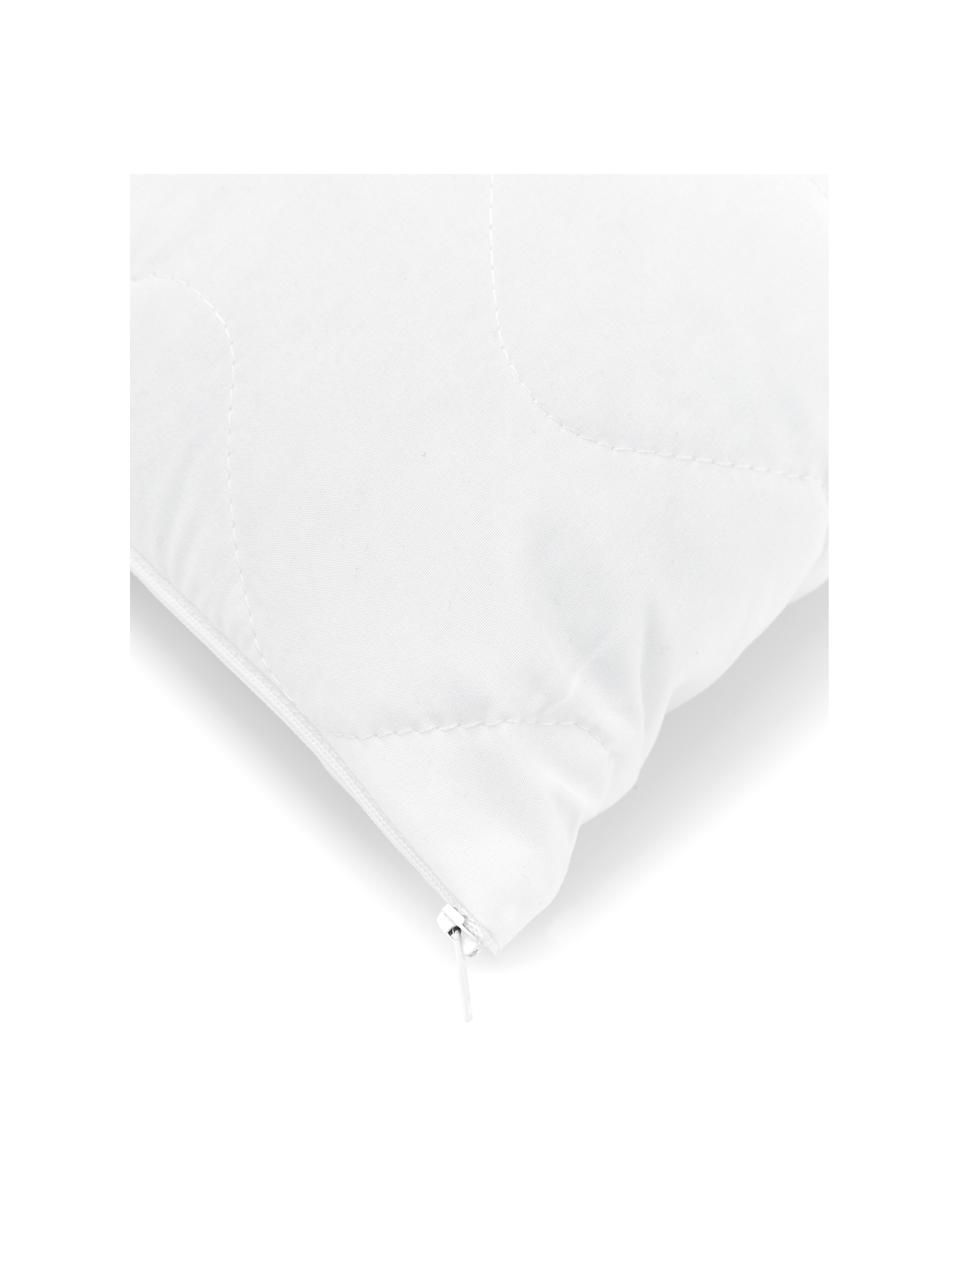 Wkład do poduszki Premium Sia, 40x40, Biały, S 40 x D 40 cm